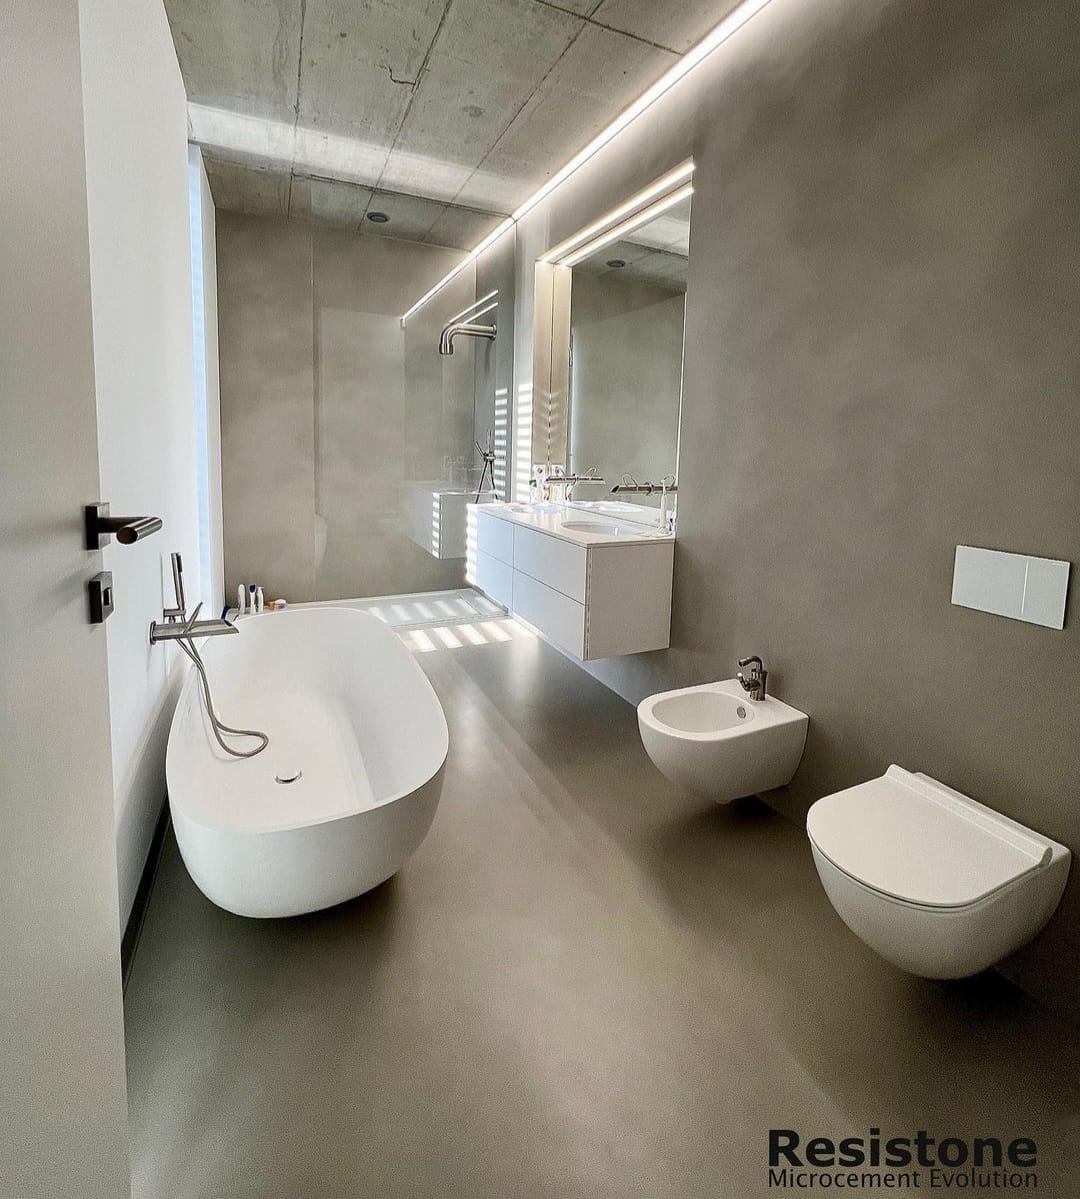 Inspiracje łazienka - Minimalistyczna łazienka z mikrocementem na ścianach i podłodze, utrzymująca elegancki i prosty design.